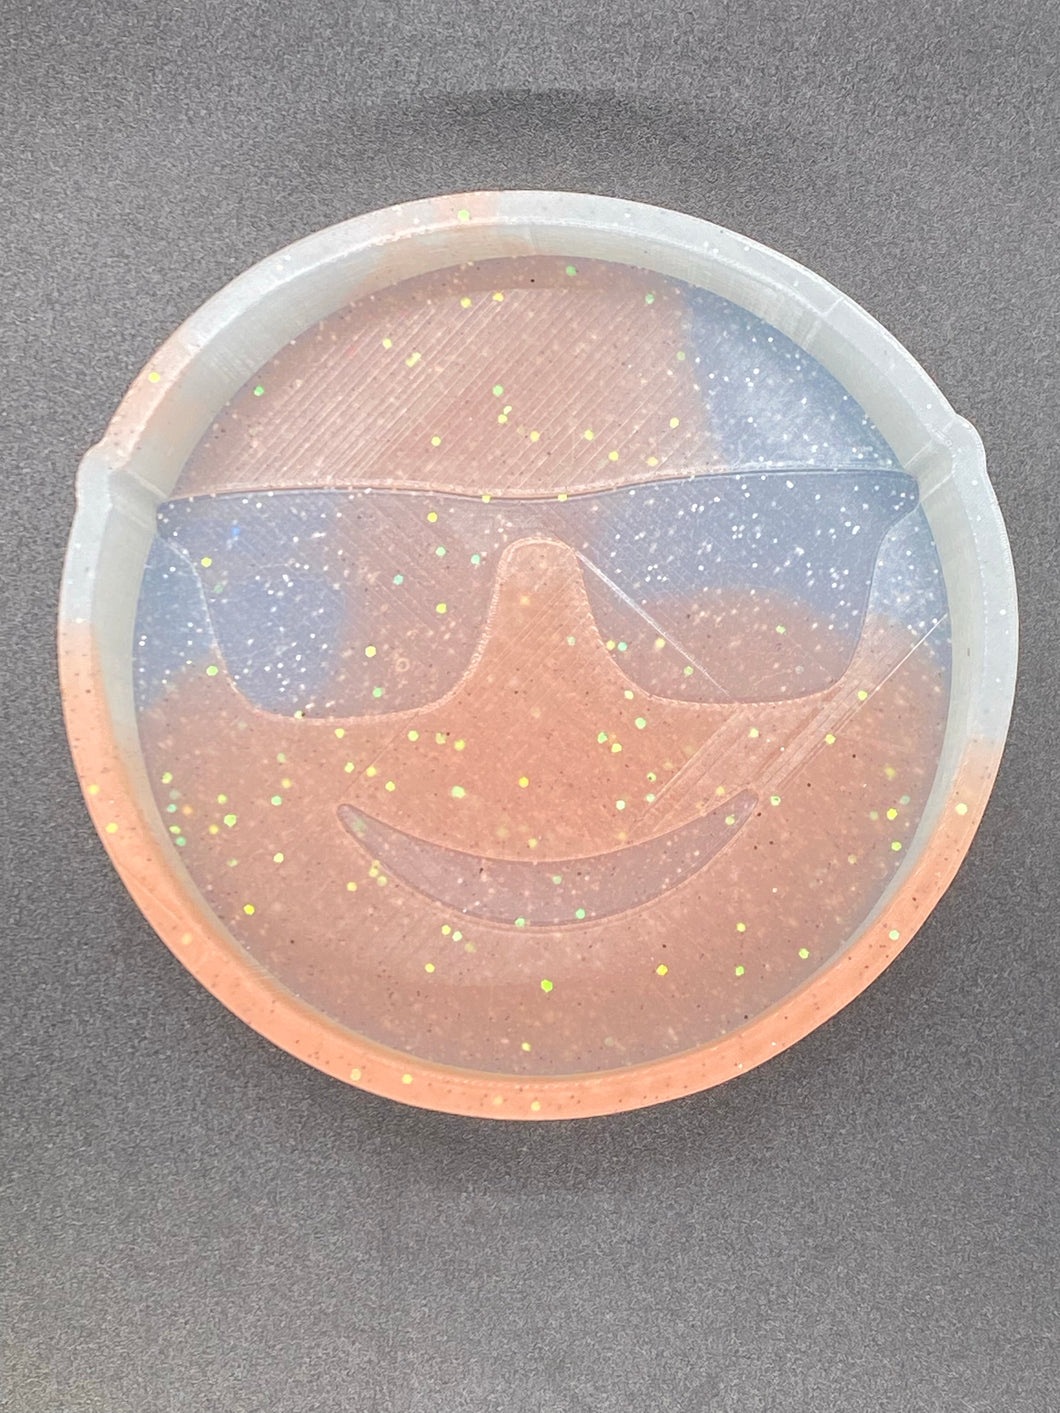 Smiley Sunglasses Emoji Silicone Mold  4.” W x 4.” T x 1